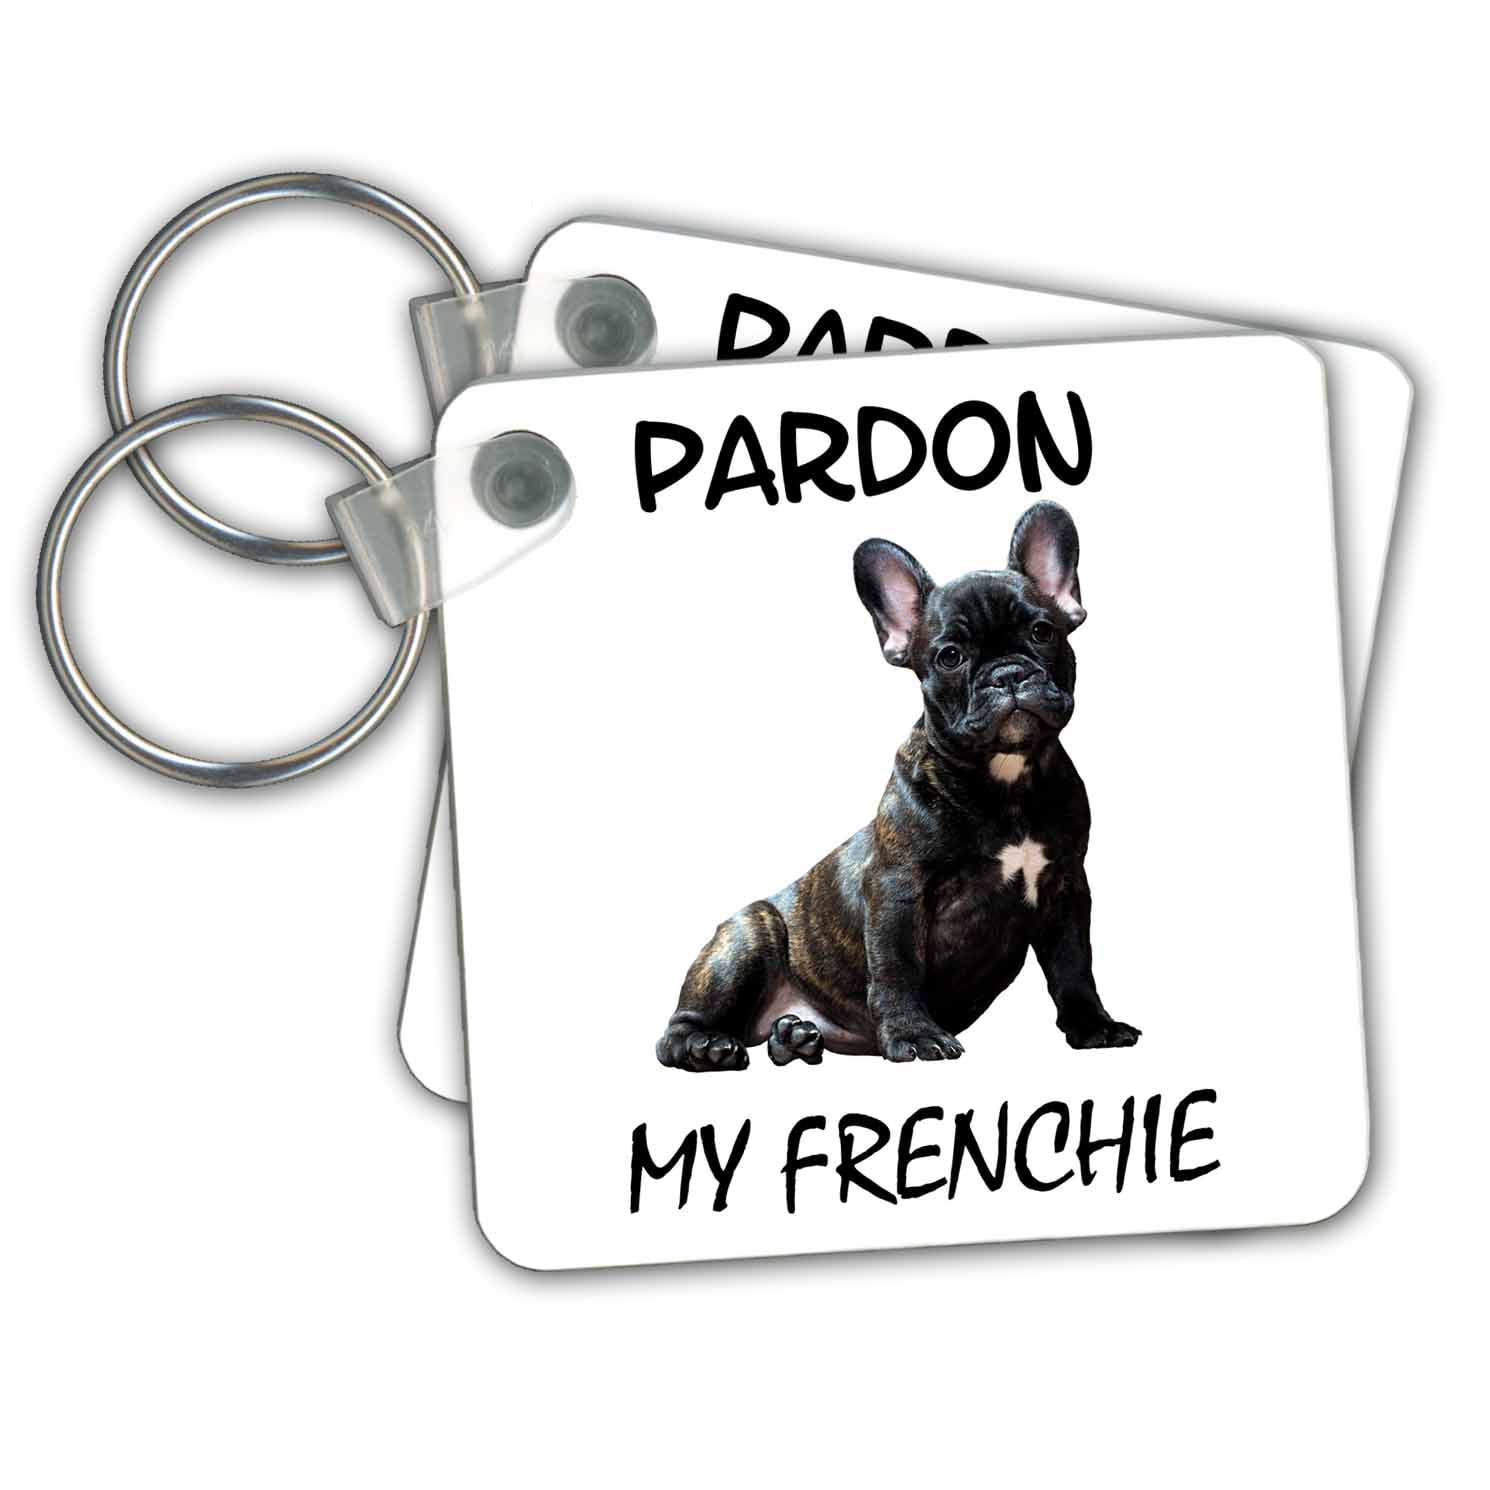 White French Bulldog Keyring Holder Qualy Frenchy Dog Wall Mounted Keychain Hook 